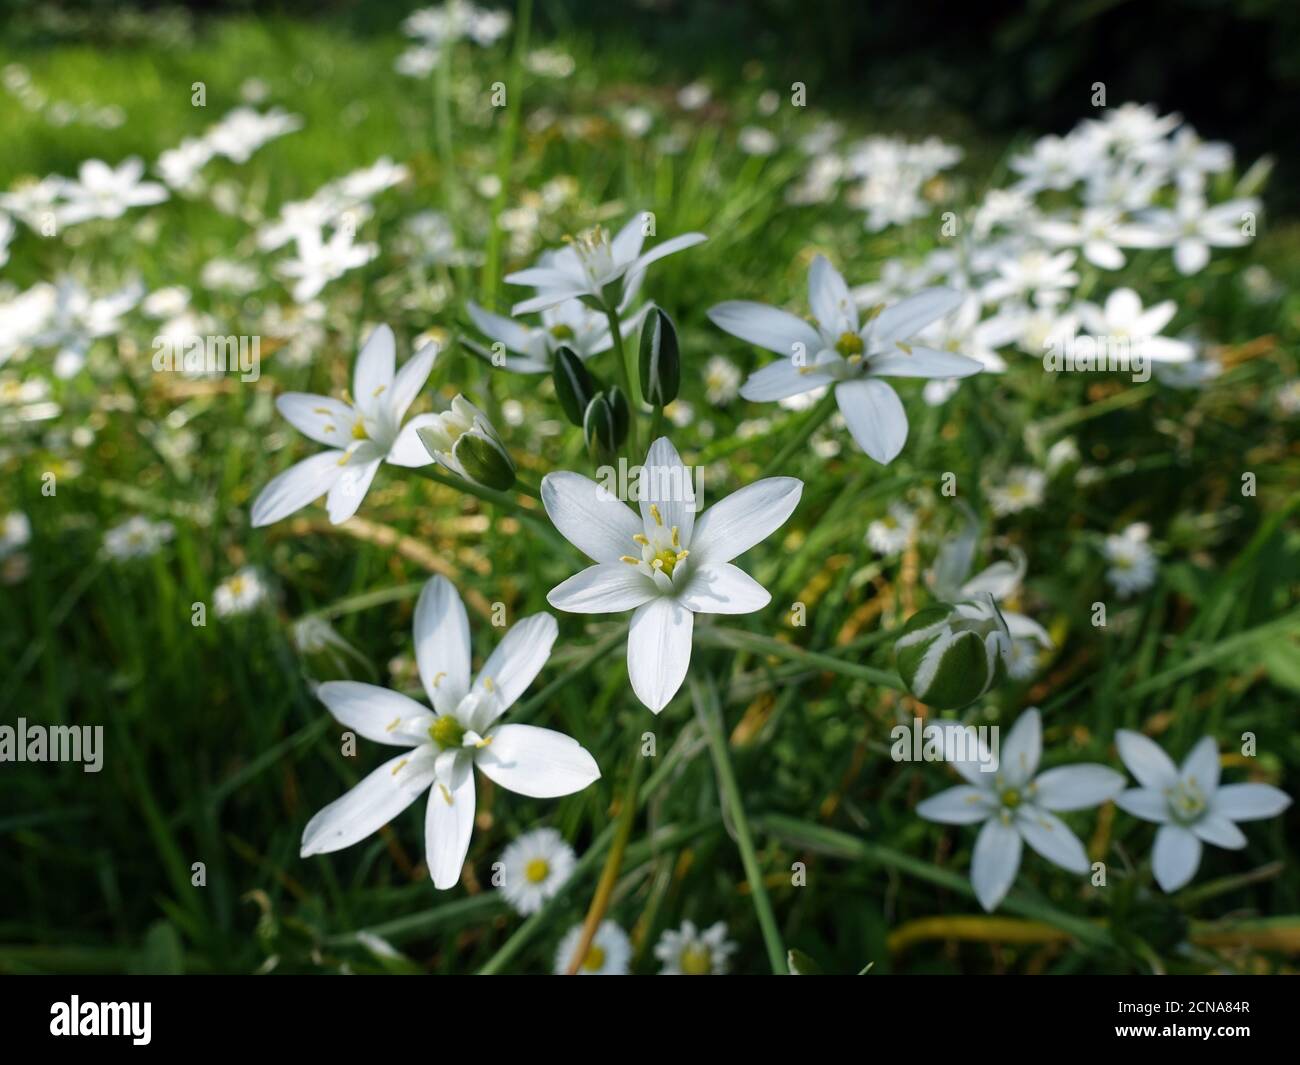 Garten-Stern-von-Bethlehem, Graslilie, Mittagsschlaf, (Ornithogalum  umbellatum), blühende Pflanze Stockfotografie - Alamy